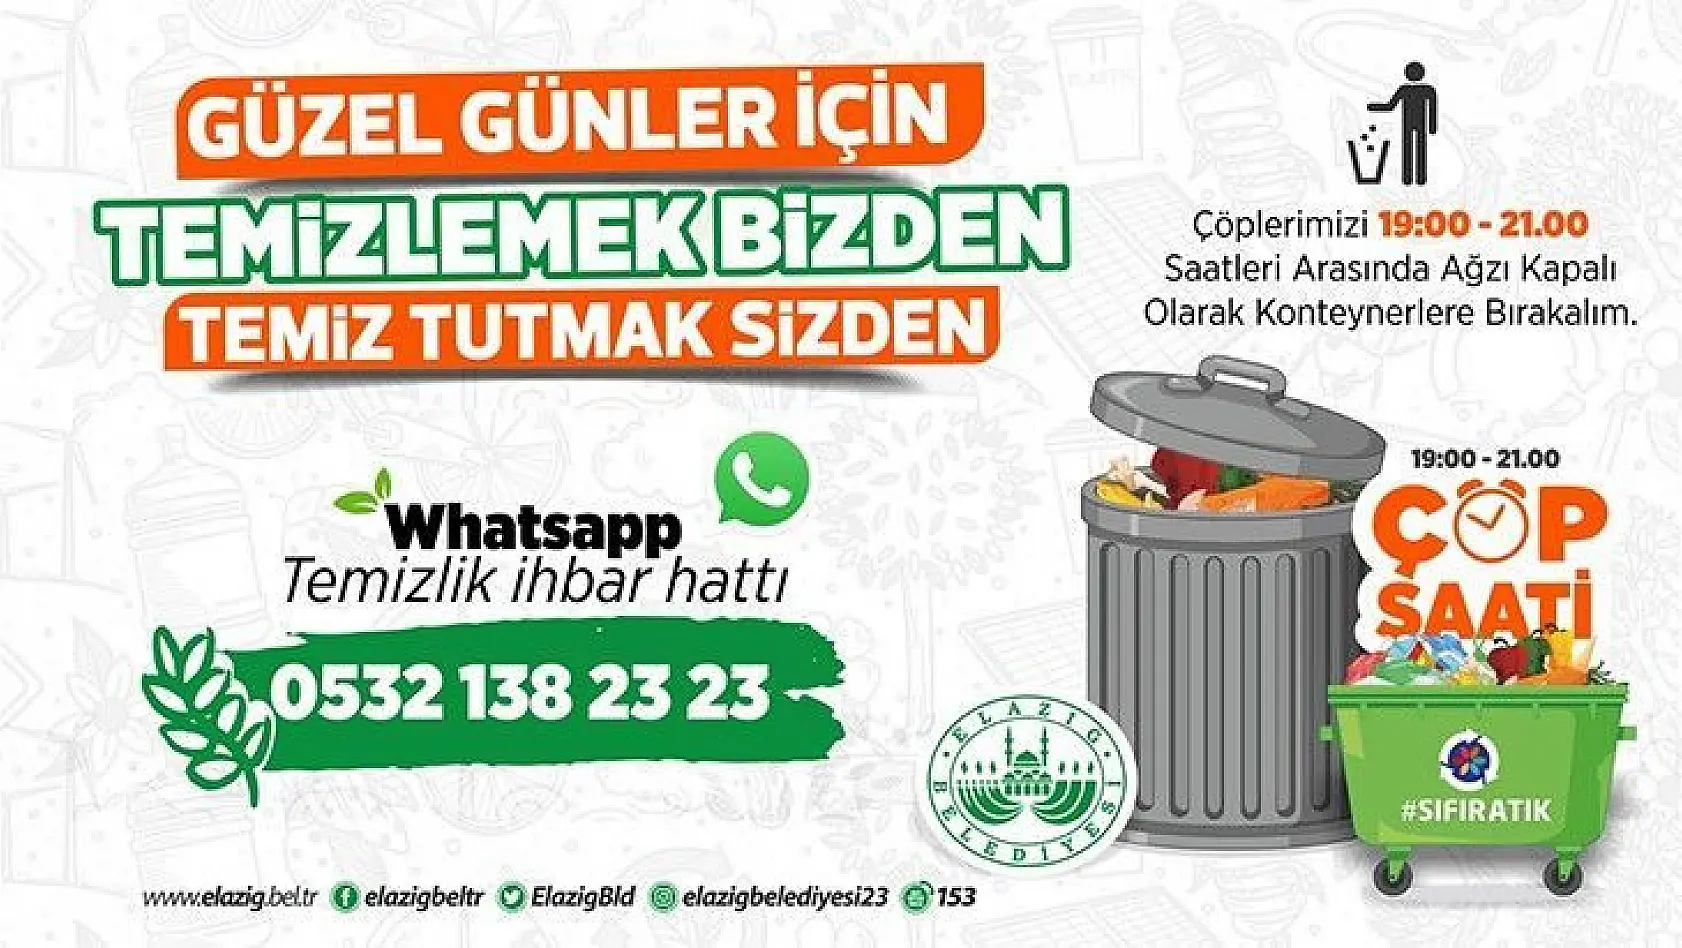 Elazığ belediyesi: 'Temizlik Bizden Temiz Tutmak Sizden'